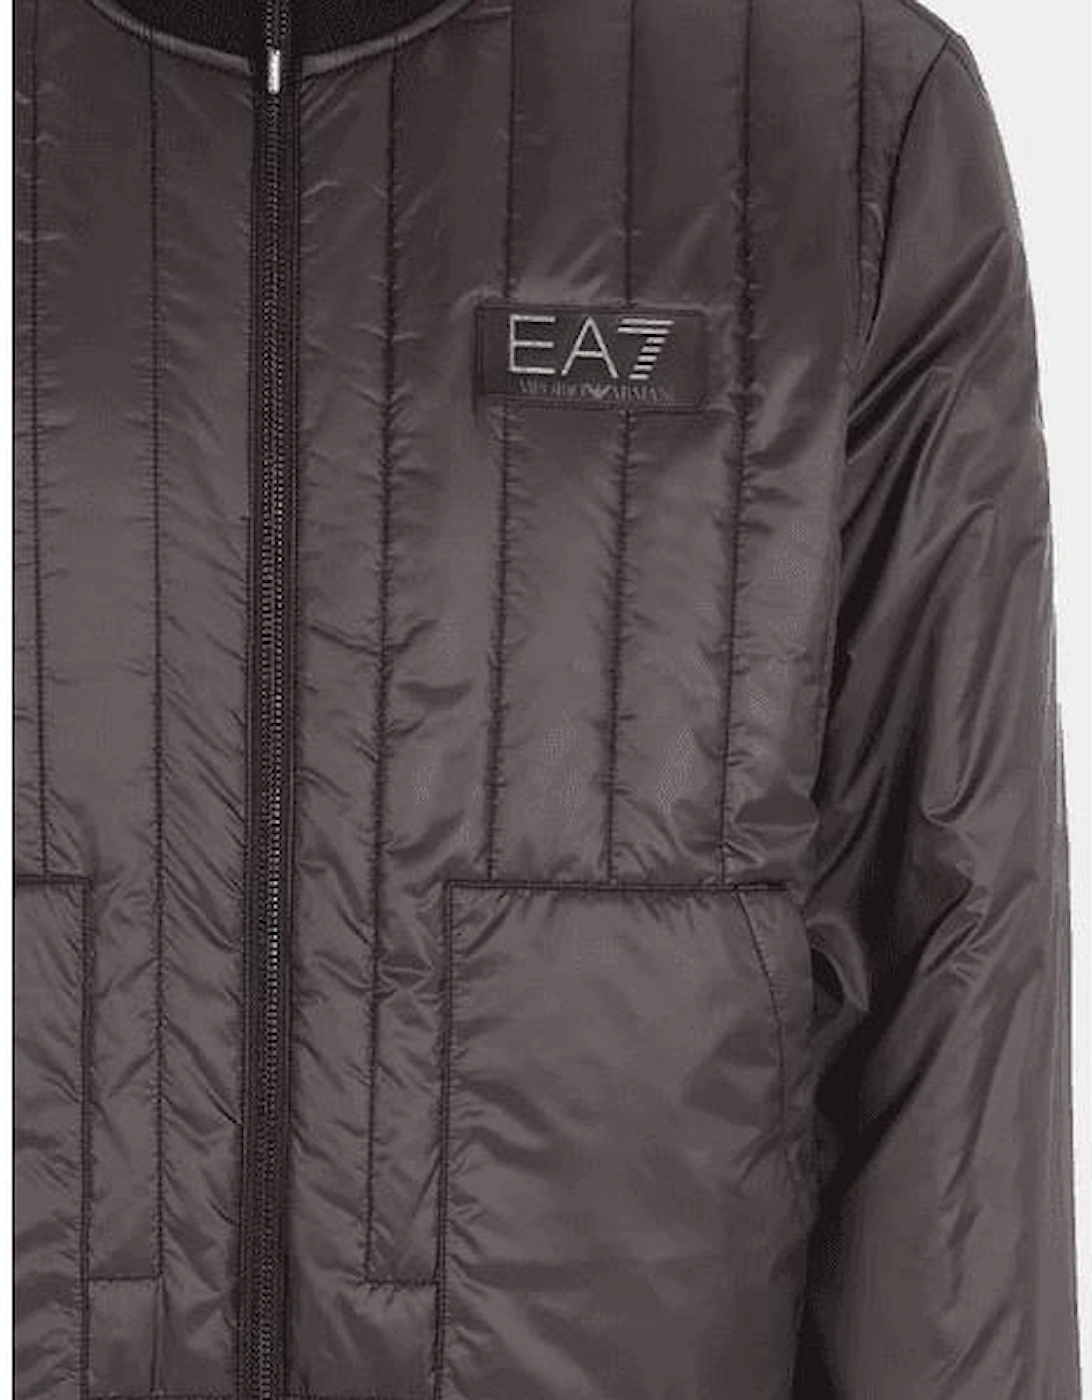 Lightweight Zip Up Reversible Black/Grey Bomber Jacket